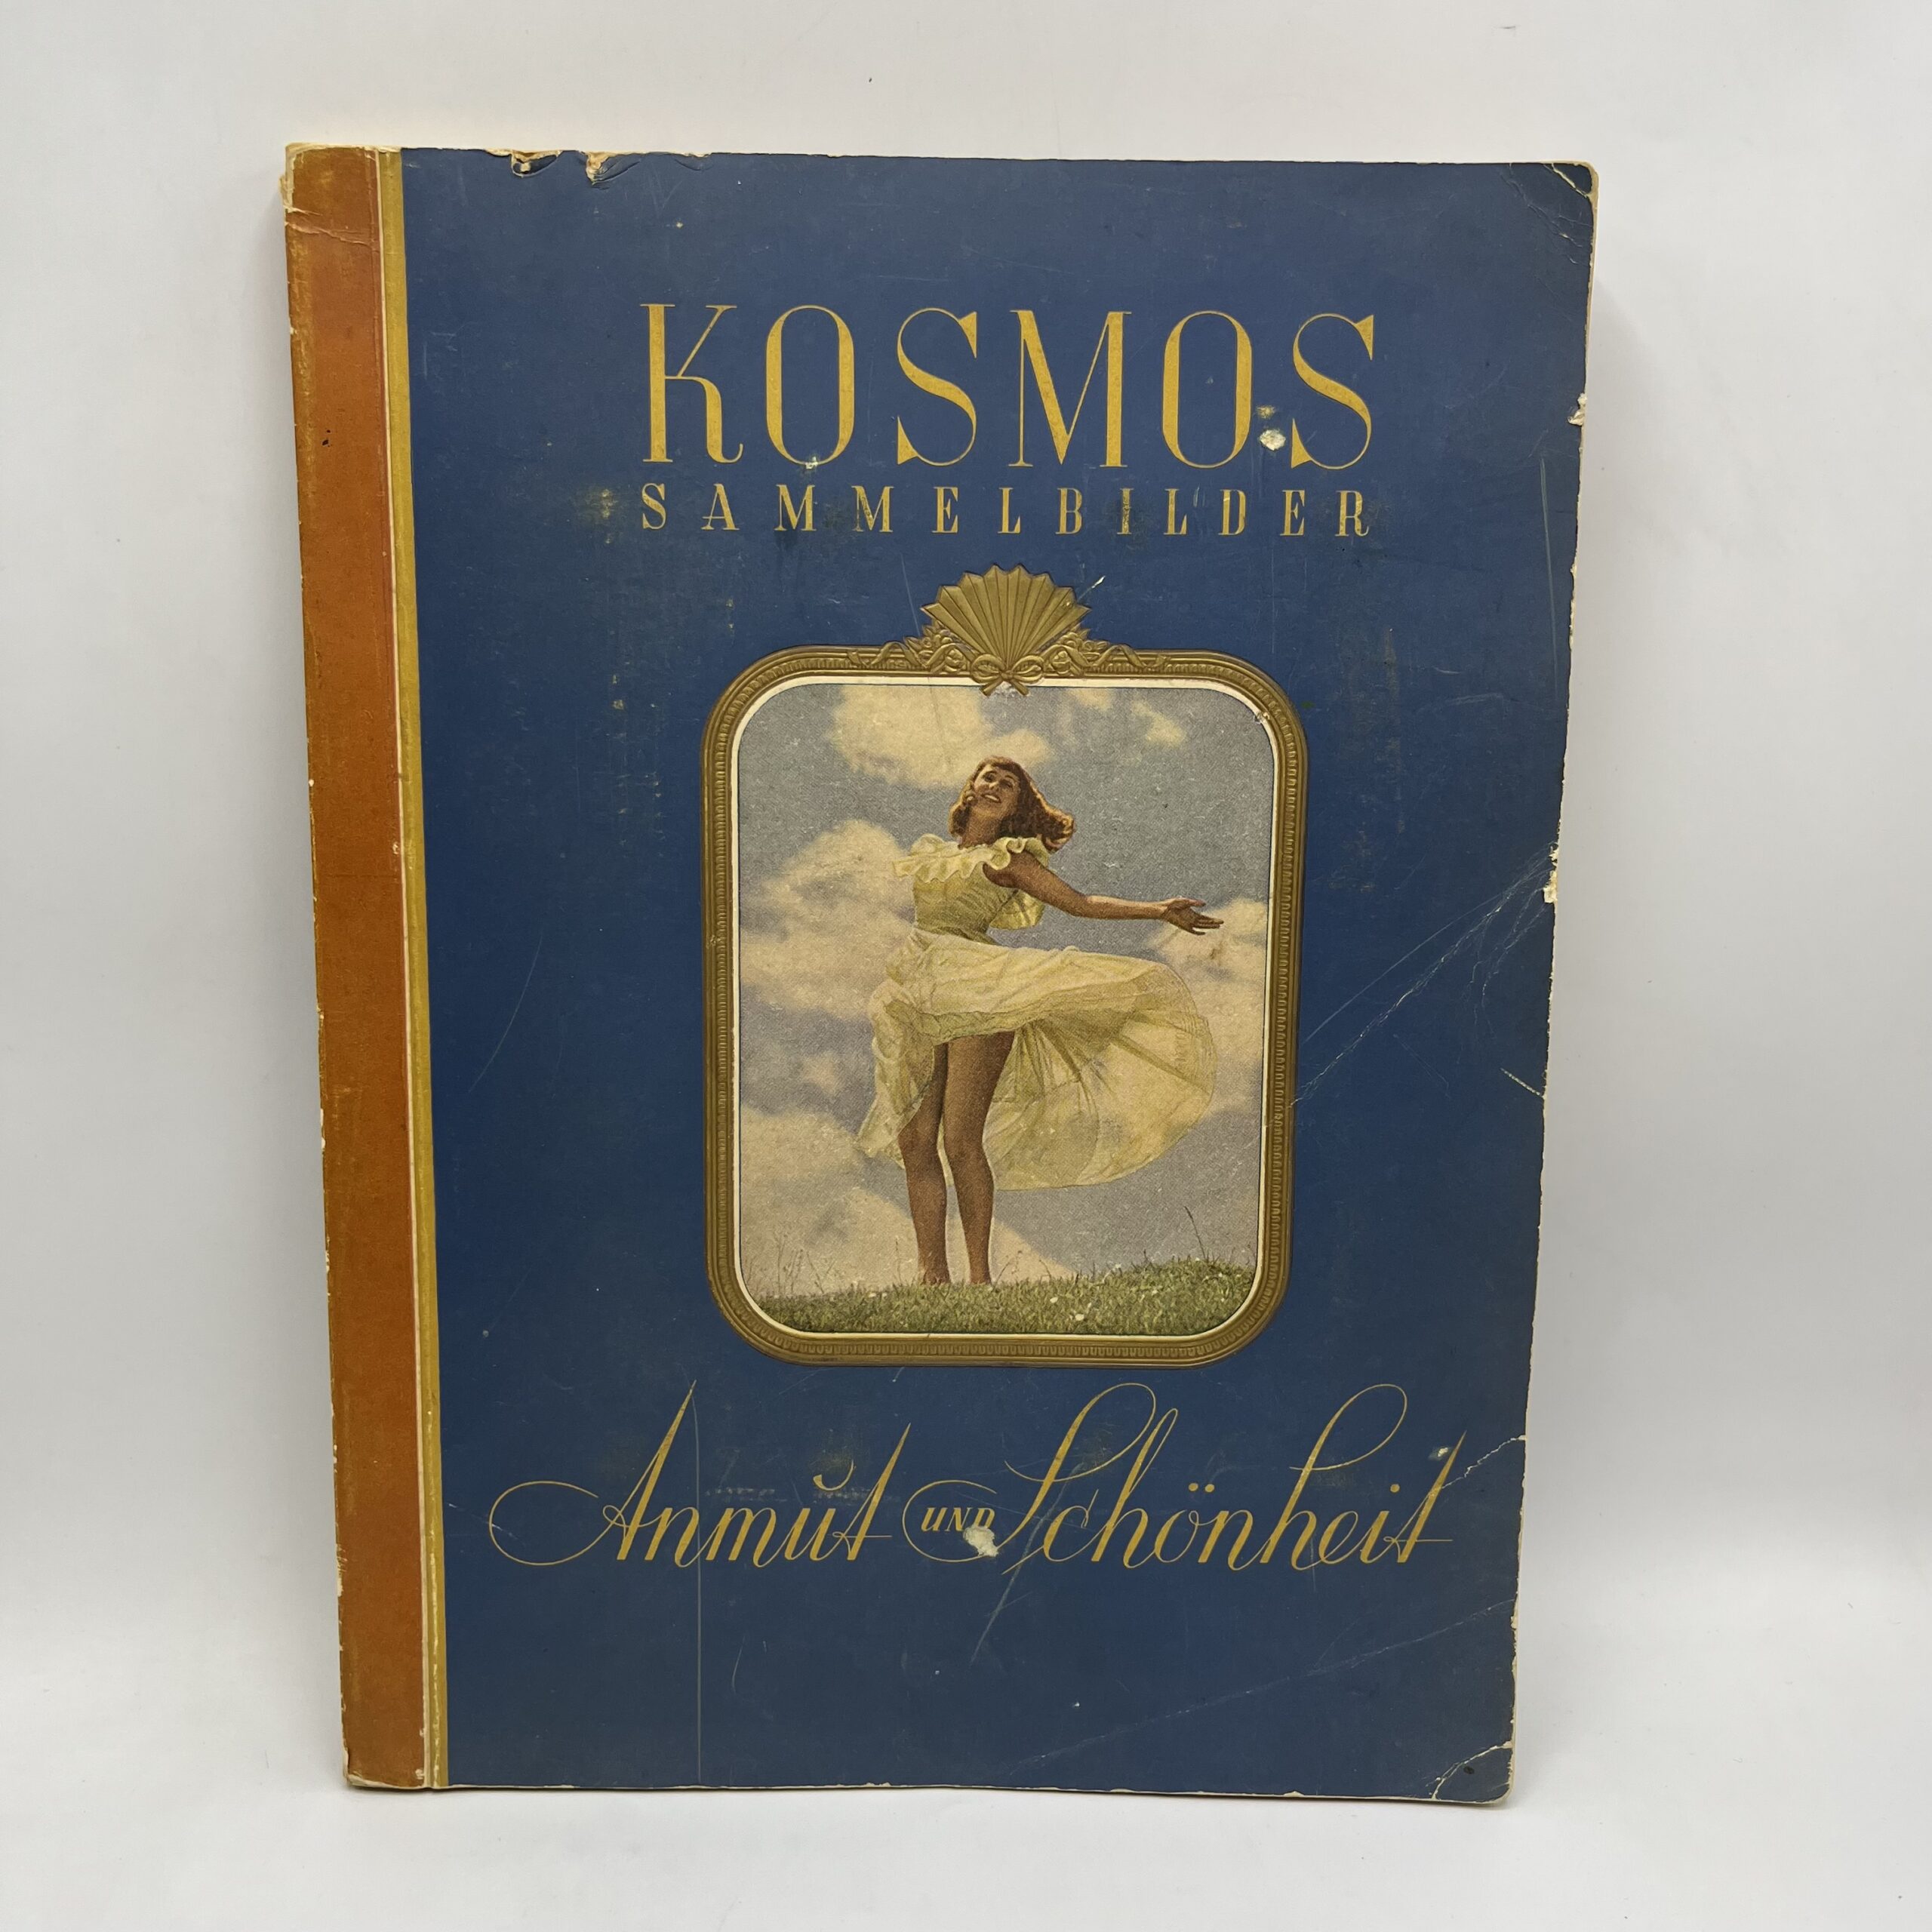 Cinema Album completo Kosmos Sammelbilder - Anmut und Schonheit 1935 ca.